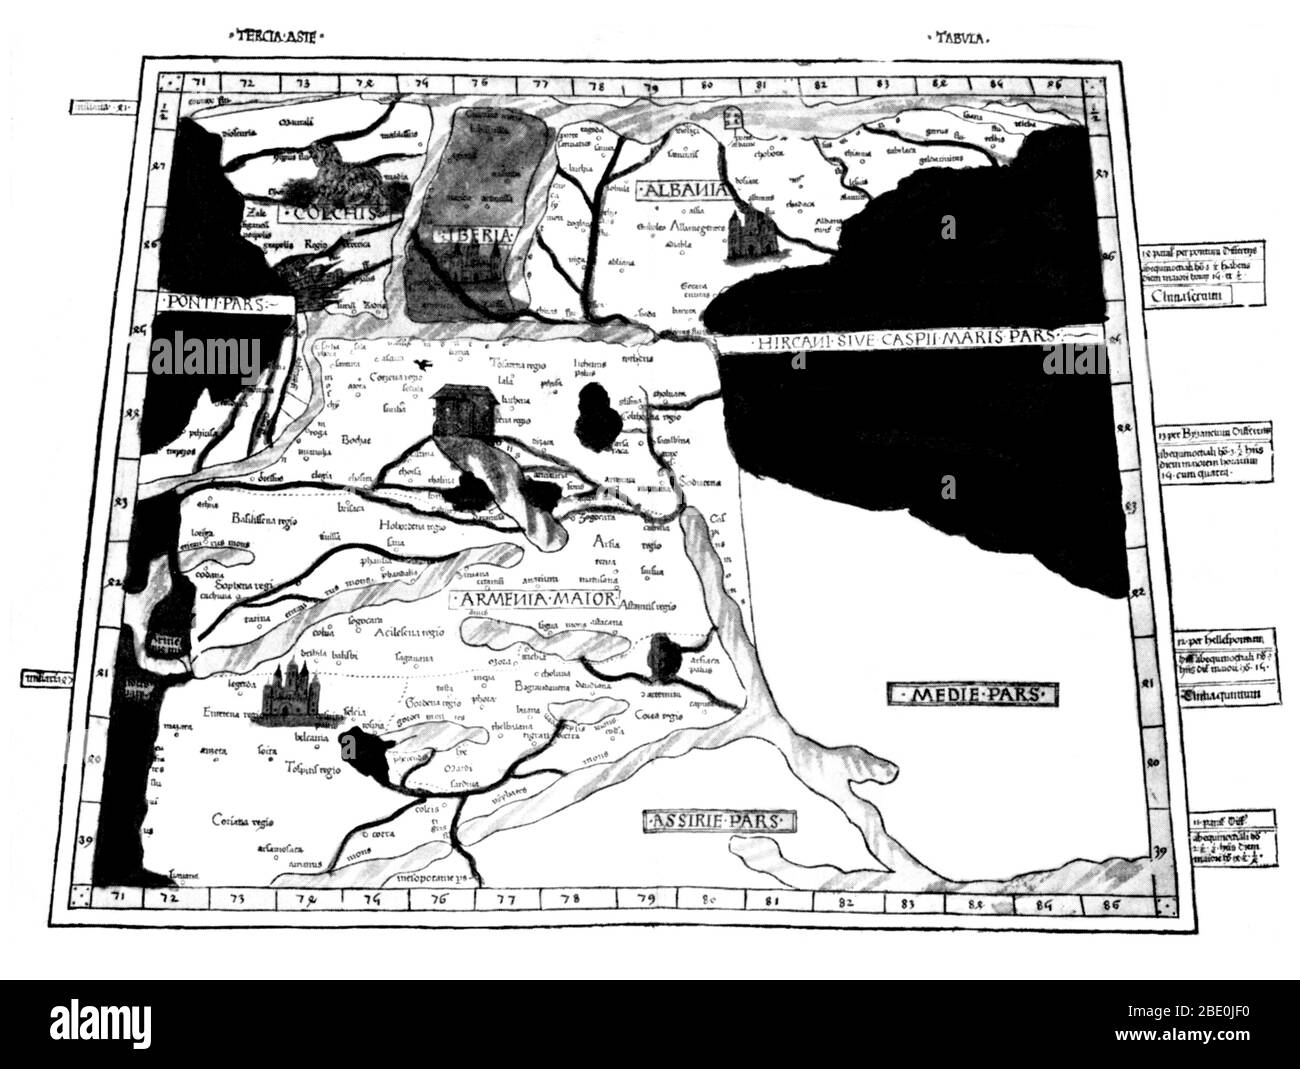 Tolomeo Mappa di Armenia con l'Arca di Noè sul Monte Ararat è stata basata sulla descrizione contenuta in quella di Tolomeo prenota Geographia, scritto 150 annuncio. Sebbene autentica mappe non sono mai stati trovati, il Geographia contiene migliaia di riferimenti a varie parti del vecchio mondo con le coordinate per la maggior parte, che ha permesso che i cartografi per ricostruire quella di Tolomeo la visione del mondo quando il manoscritto è stato ri-scoperta intorno al 1300 D.C. Forse il più significativo contributo di Tolomeo e il suo mappe è il primo utilizza di longitudinali e latitudinali linee e la specificazione della località terrestre da obse celesti Foto Stock